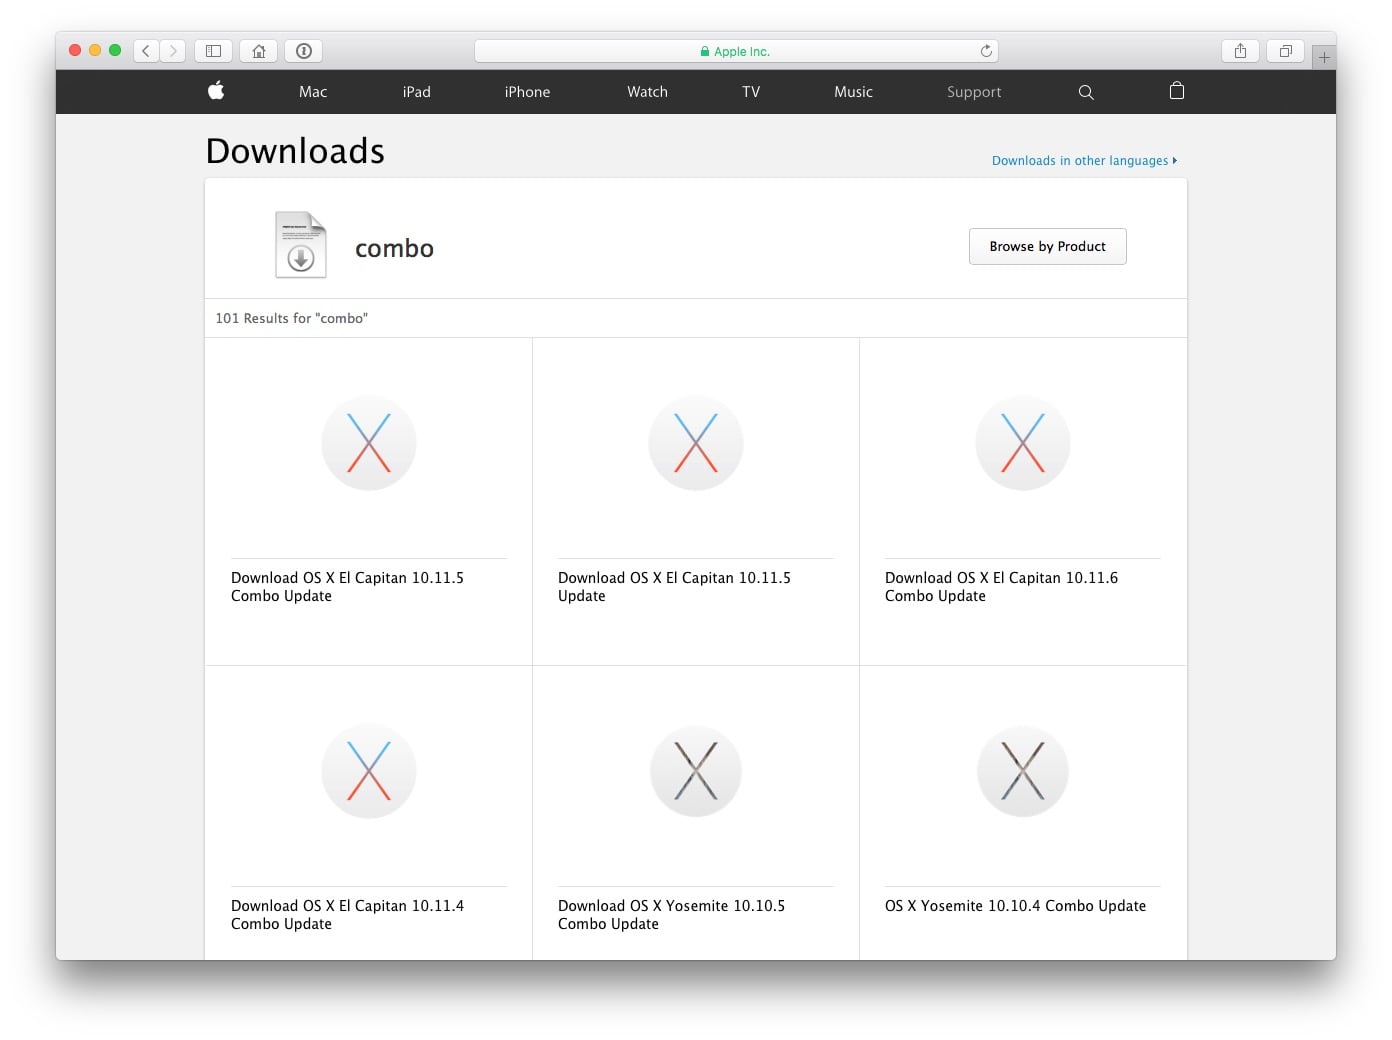 Mac-OS-X-El-Capitan-10.11.6-combo-download